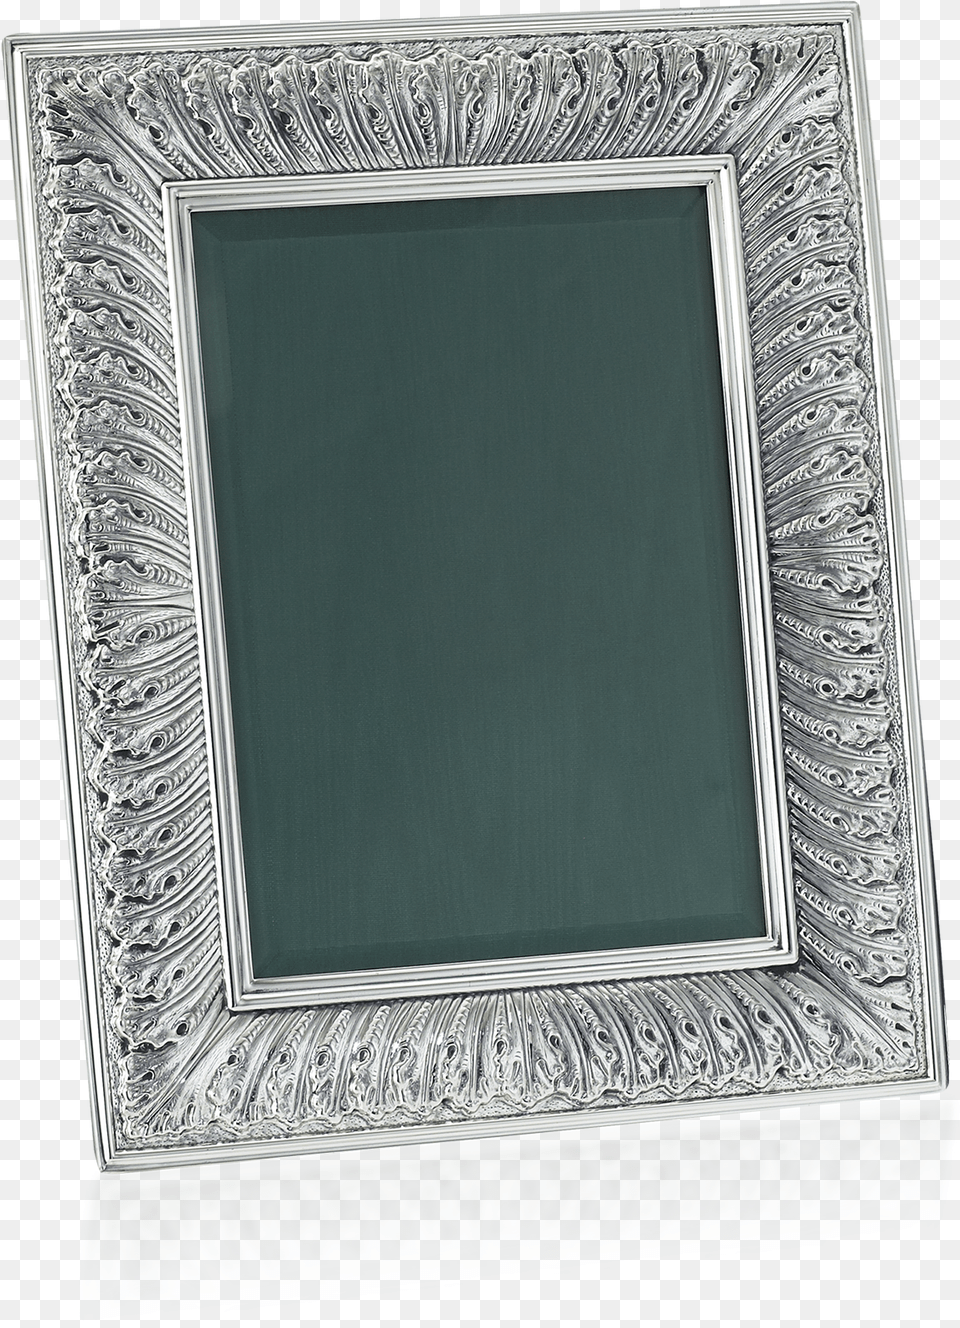 Buccellati Frames Linenfold Frames Picture Frame, Mirror, Door Png Image